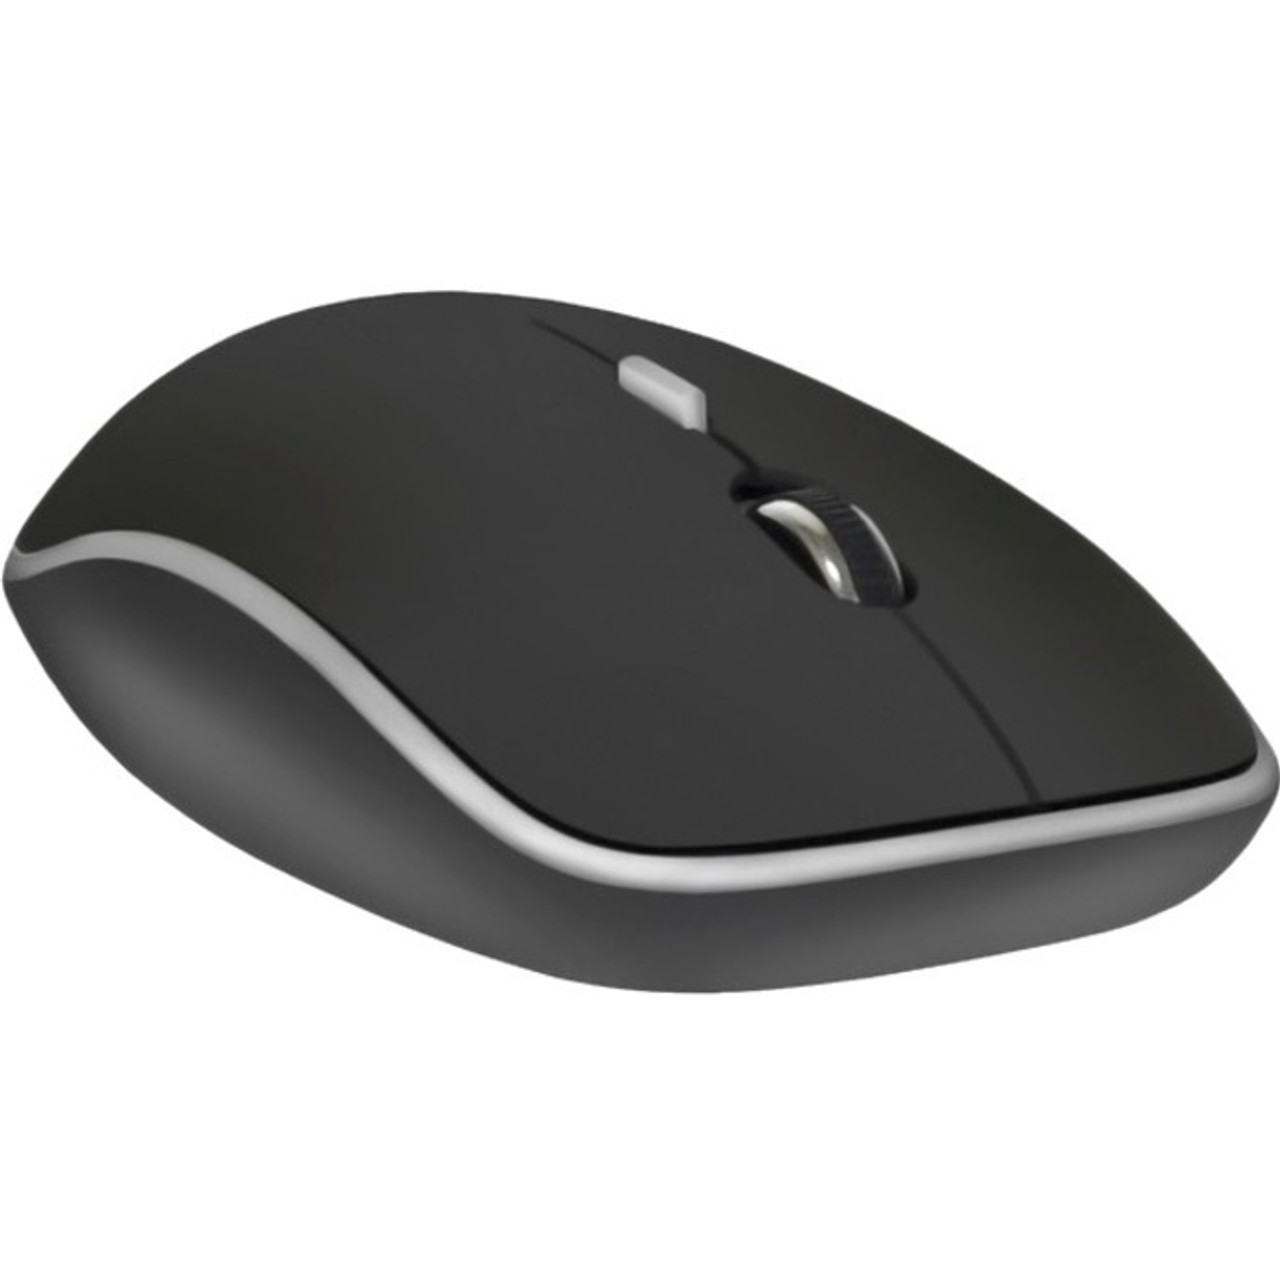 Premiertek Mouse - WM-106BK